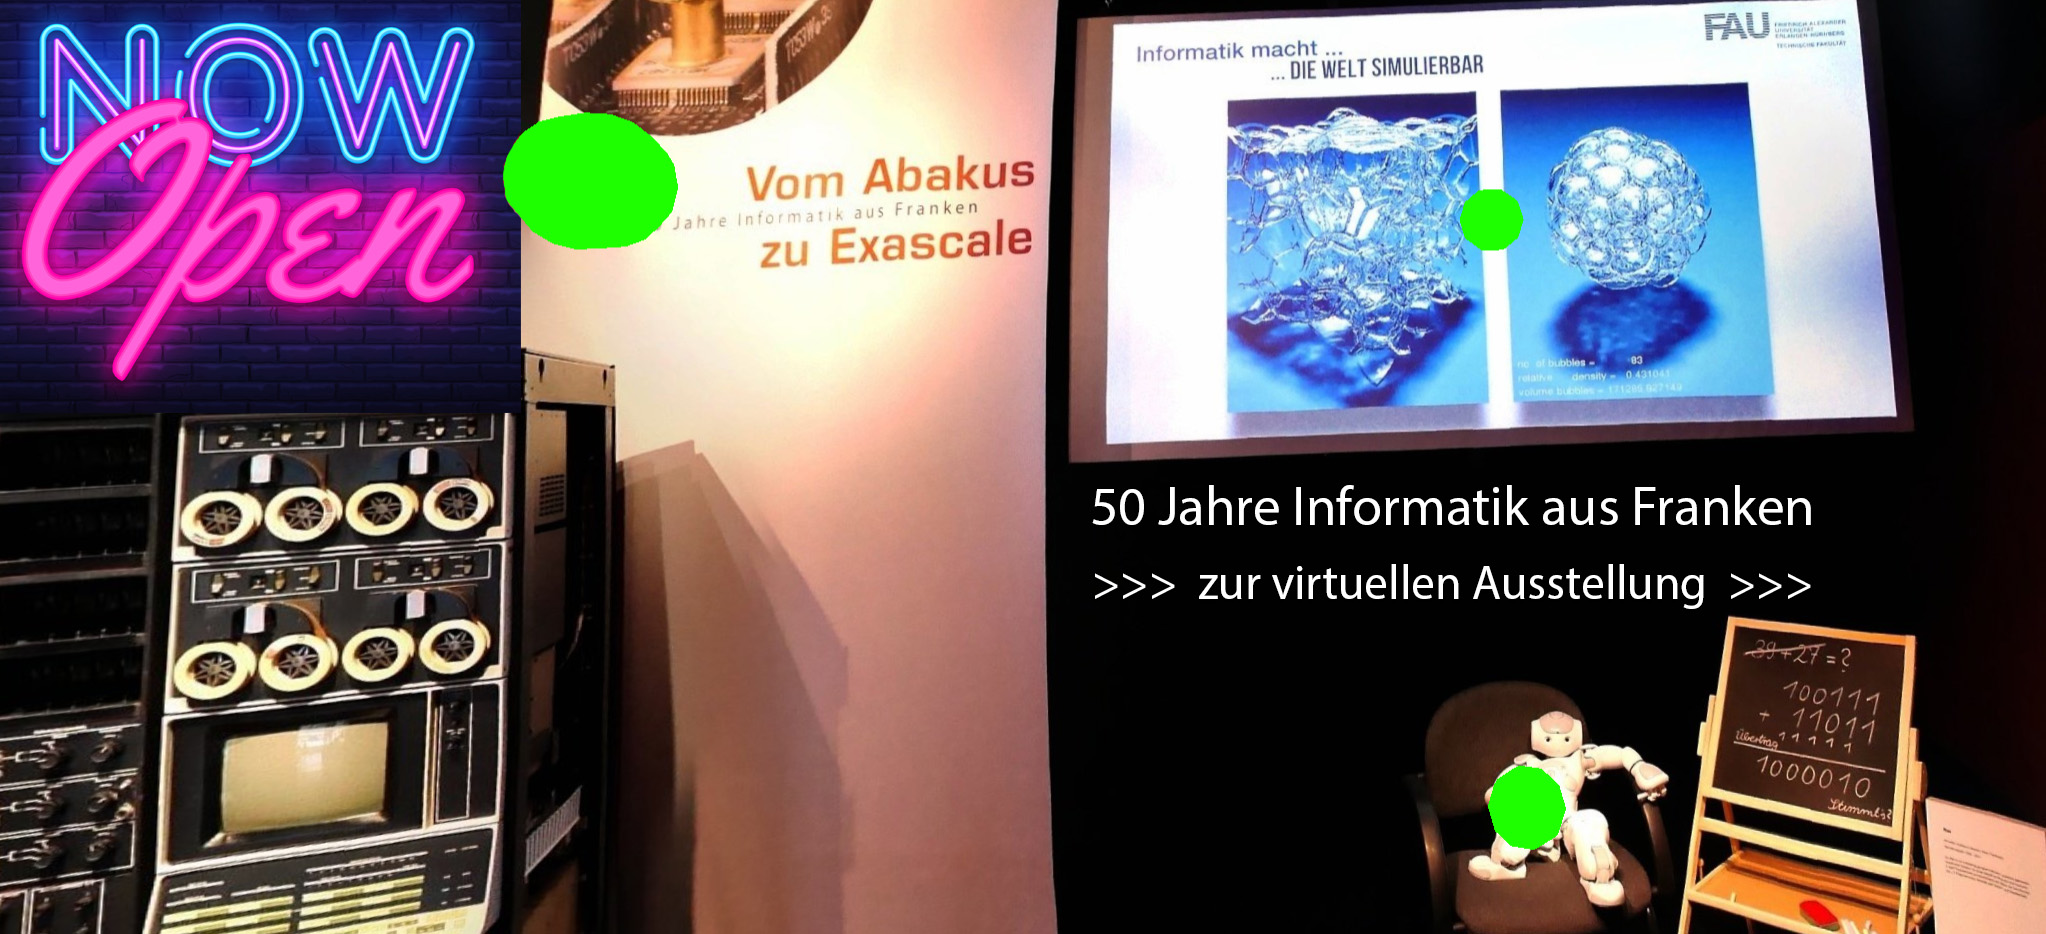 Bild virtuelle Ausstellung "50 Jahre Informatik aus Franken"